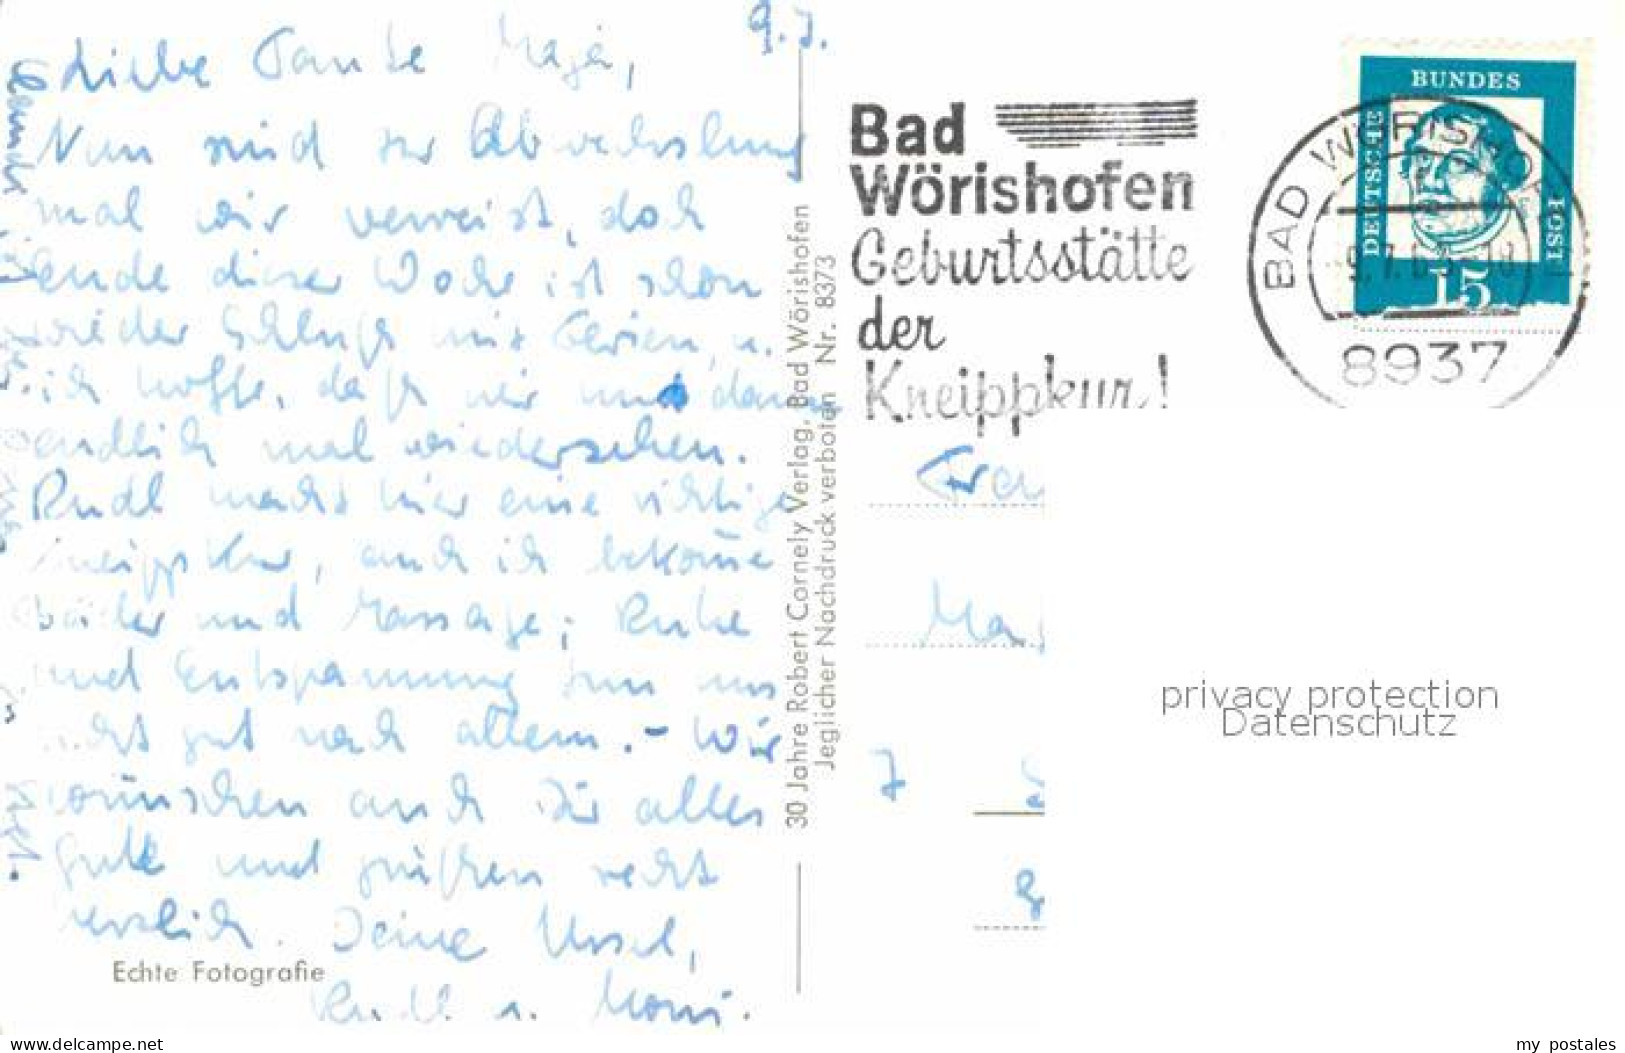 72749213 Bad Woerishofen Weichsquelle Am Tannenbaum Bad Woerishofen - Bad Woerishofen